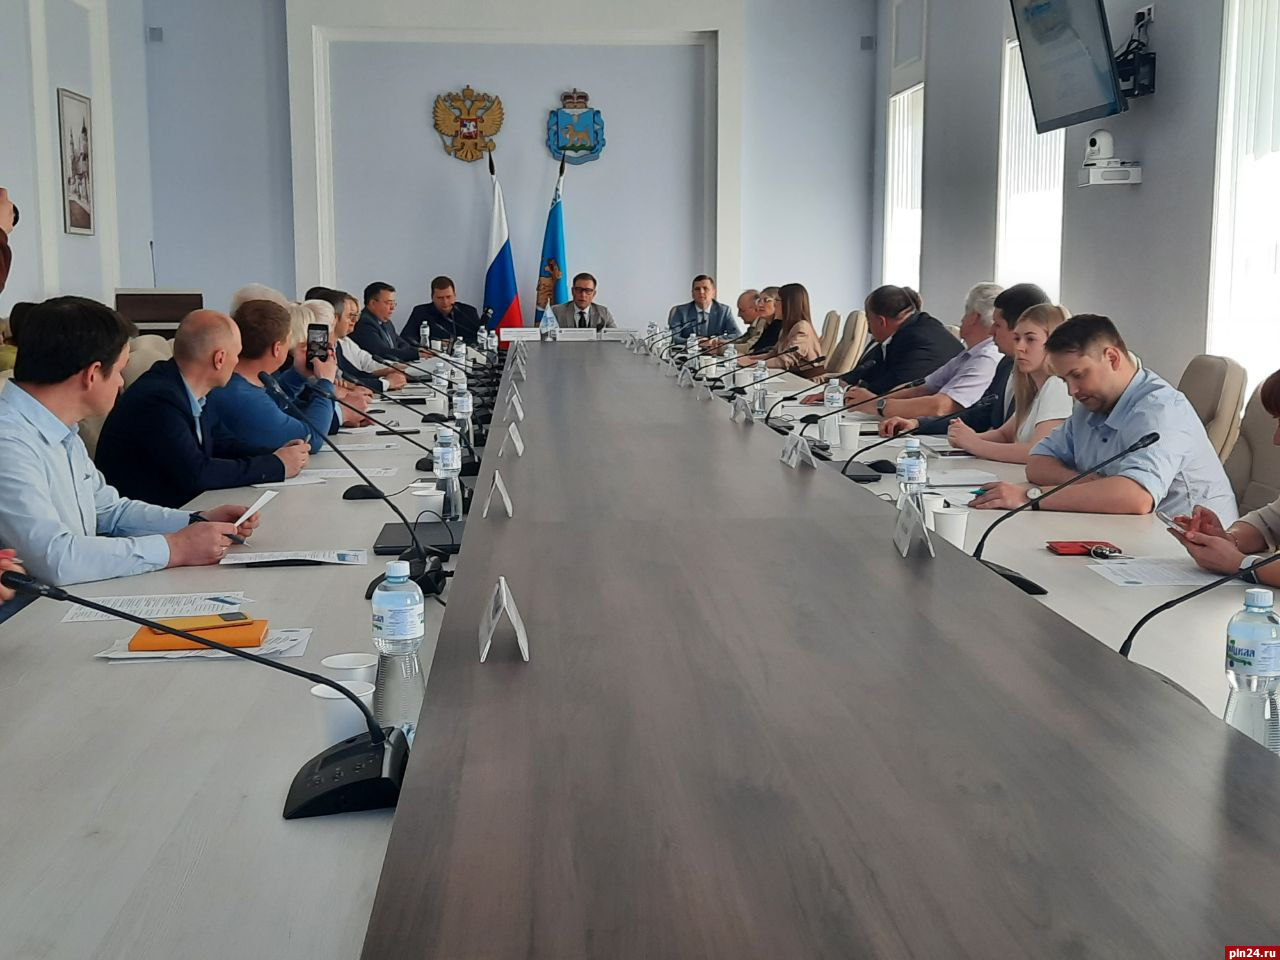 Глав муниципальных округов в Псковской области изберут в ноябре 